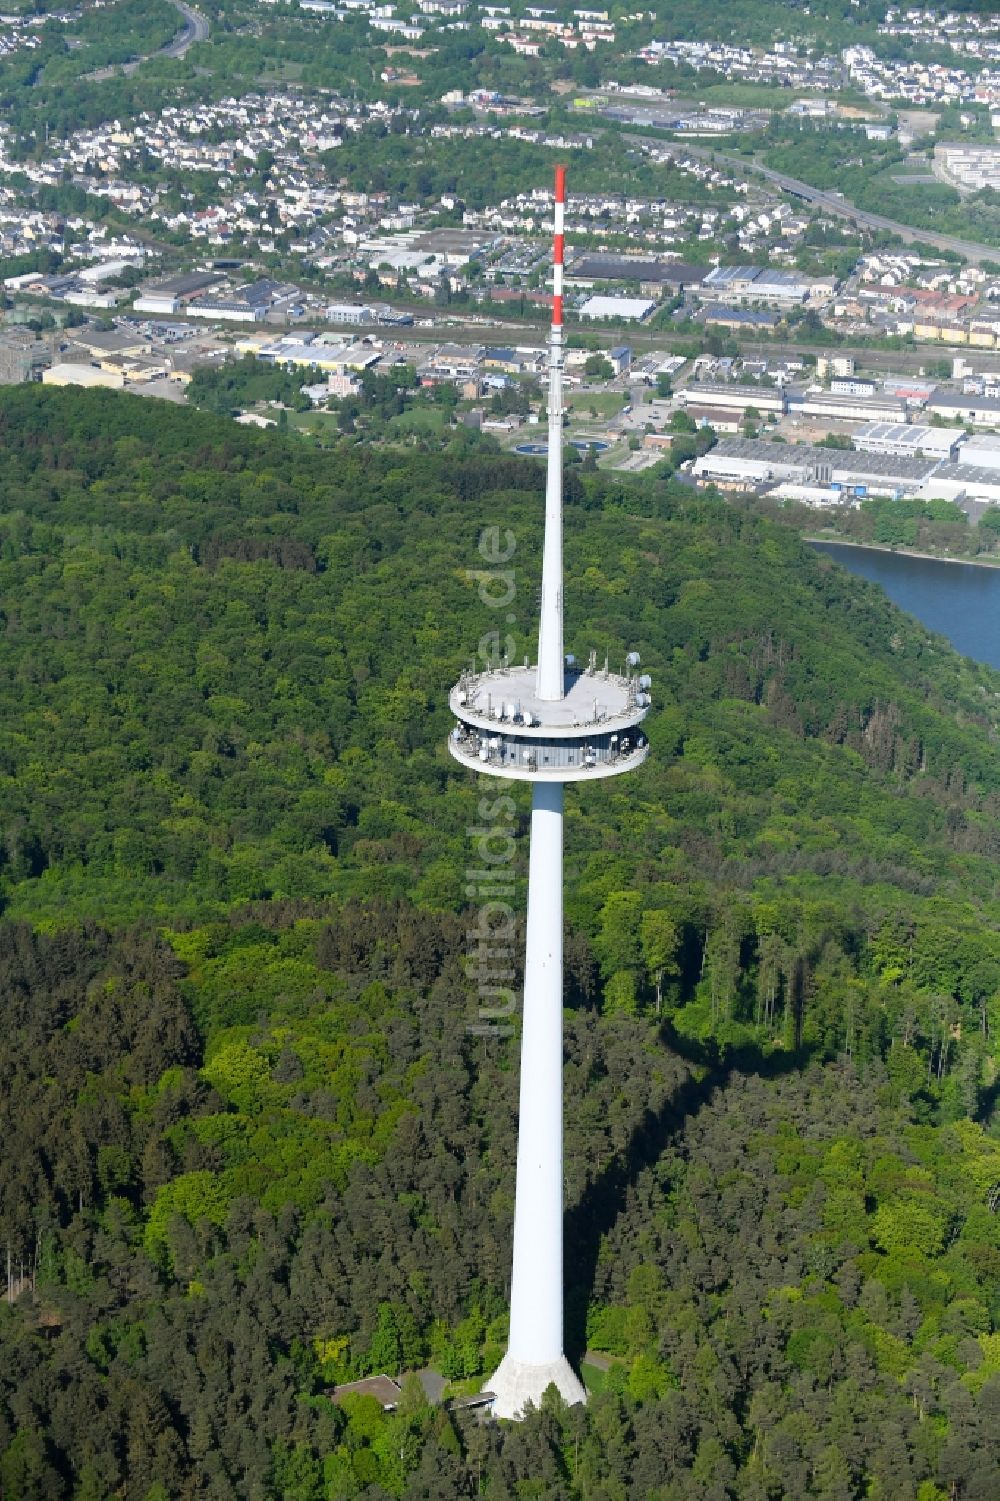 Luftbild Koblenz - Fernmeldeturm und Fernsehturm Kühkopf in Koblenz im Bundesland Rheinland-Pfalz, Deutschland